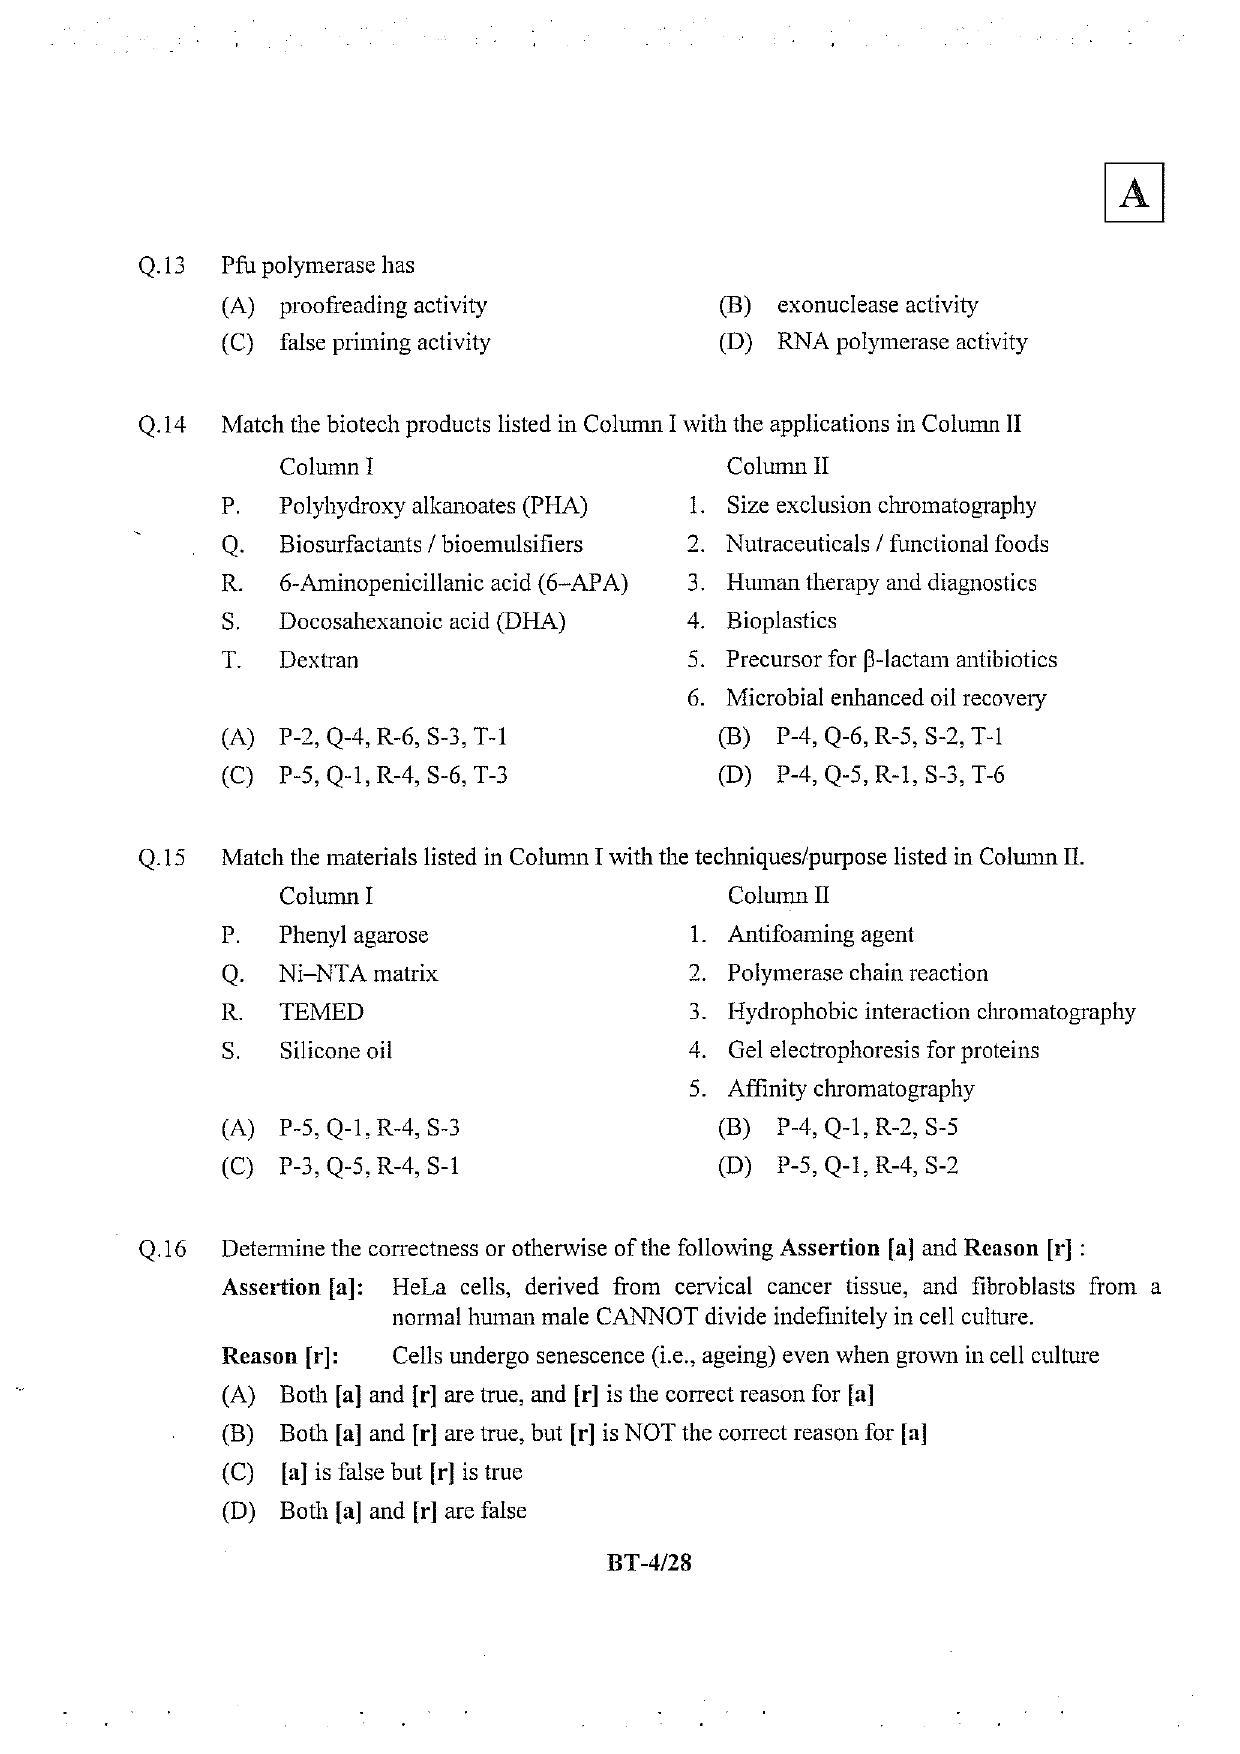 JAM 2013: BT Question Paper - Page 5